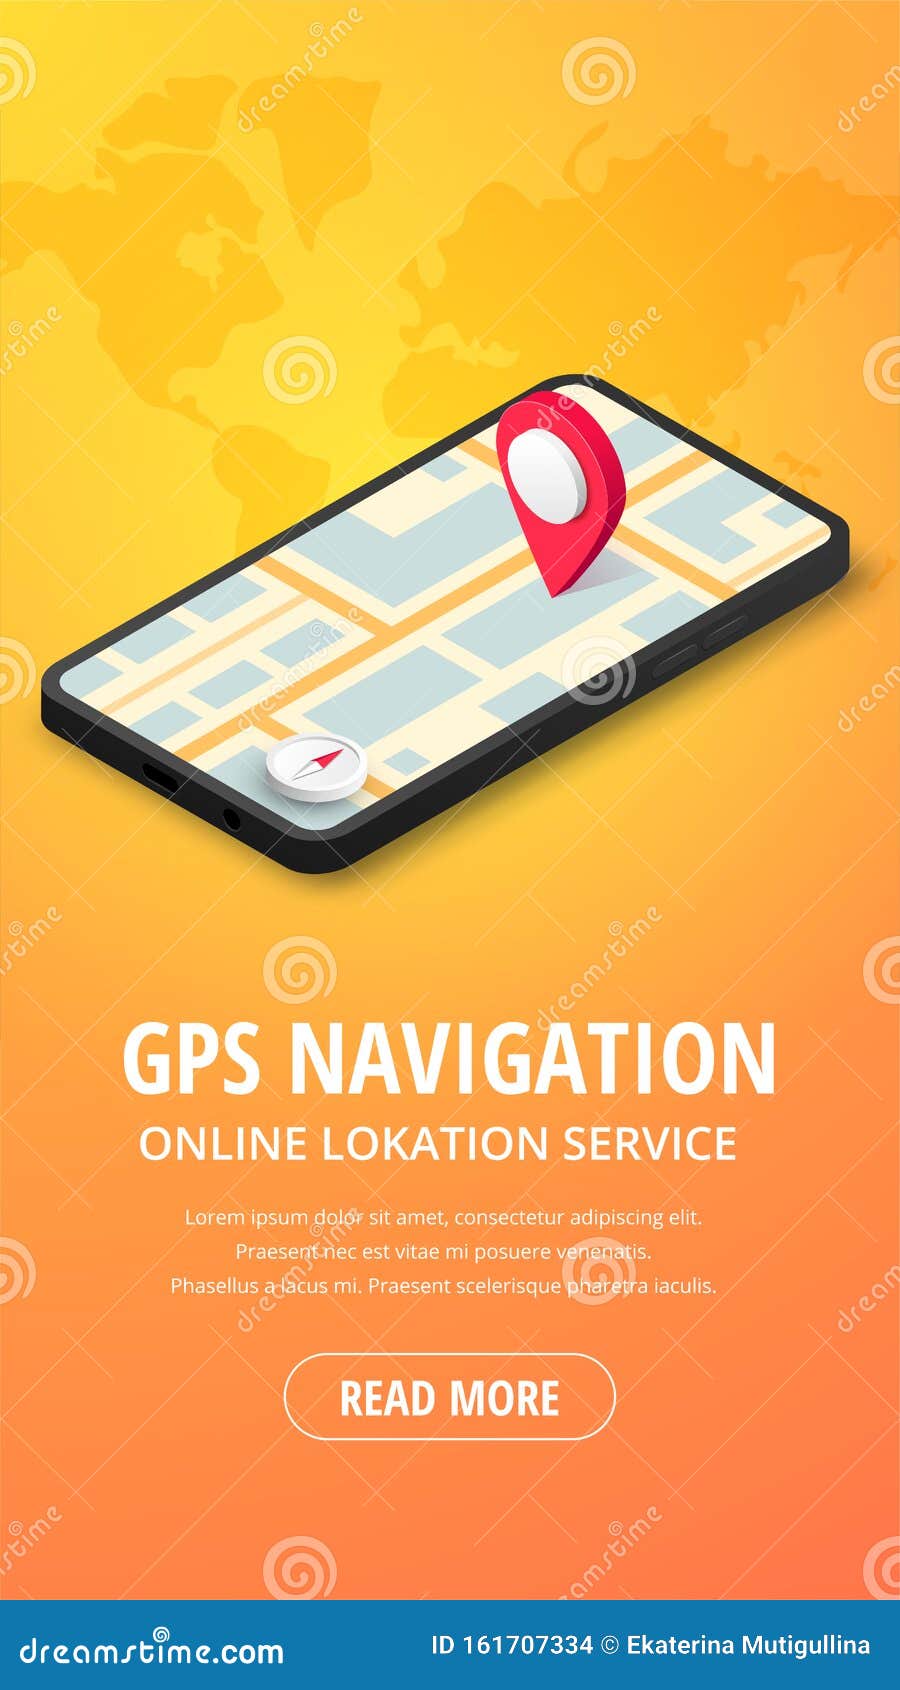 Etna impressionisme kontakt GPS Navigation Vertical Banner Stock Illustration - Illustration of online,  geolocation: 161707334